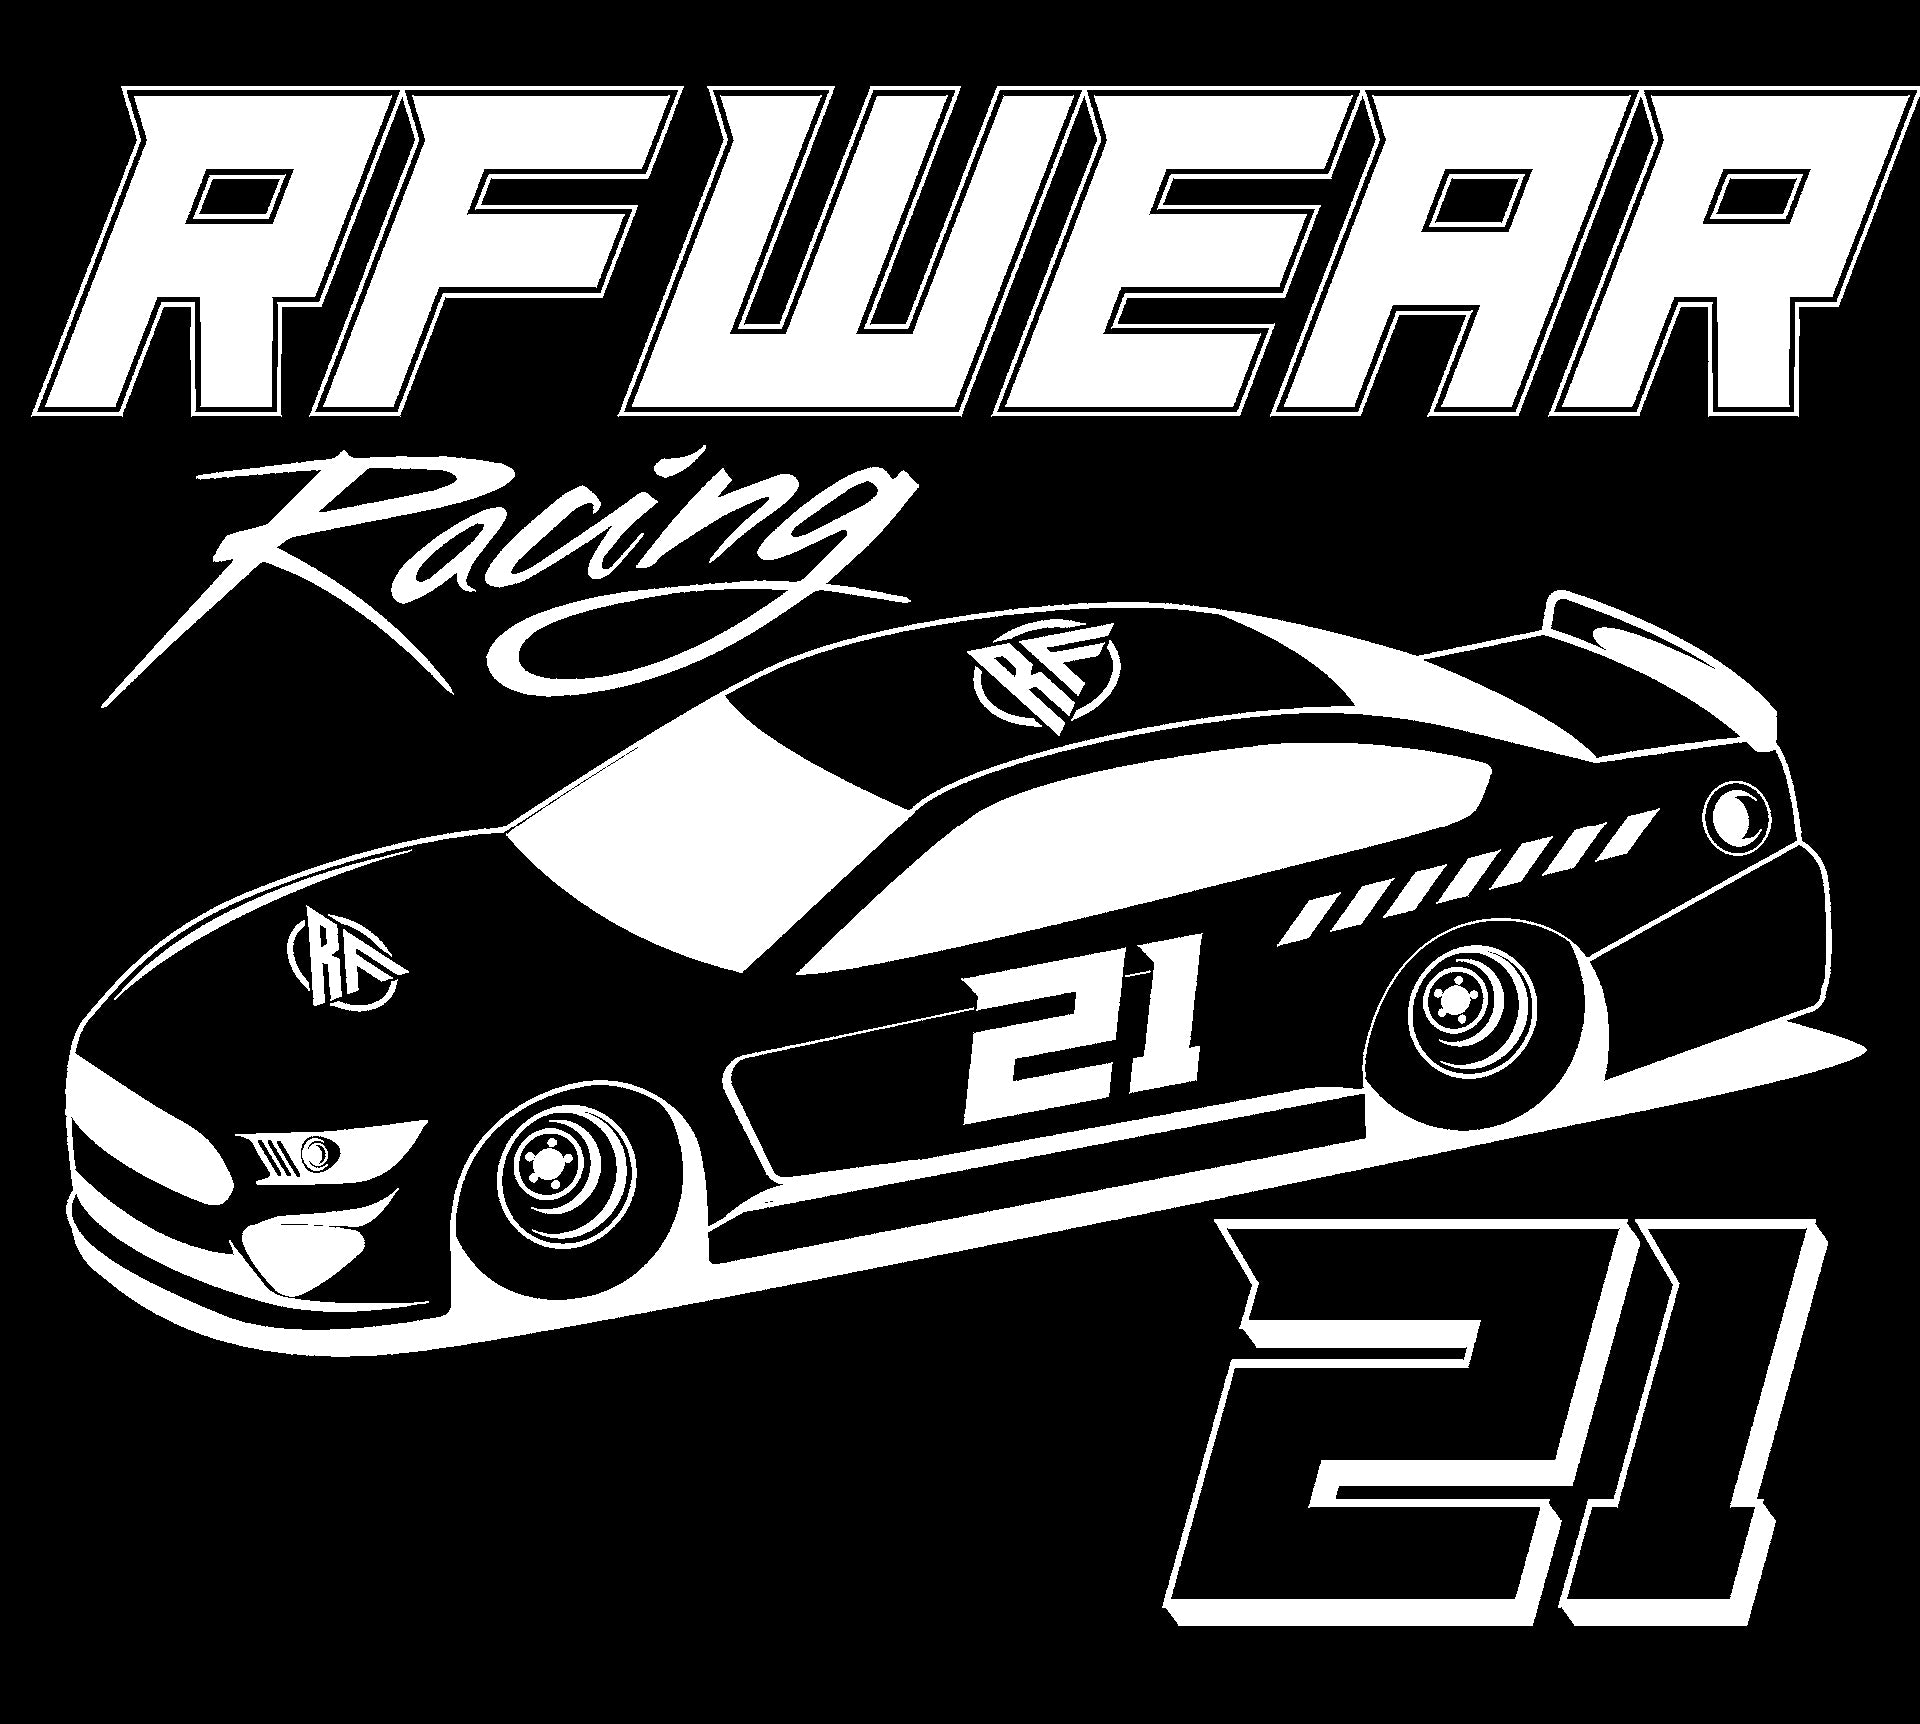 Promo RF Wear Racing T-Shirt